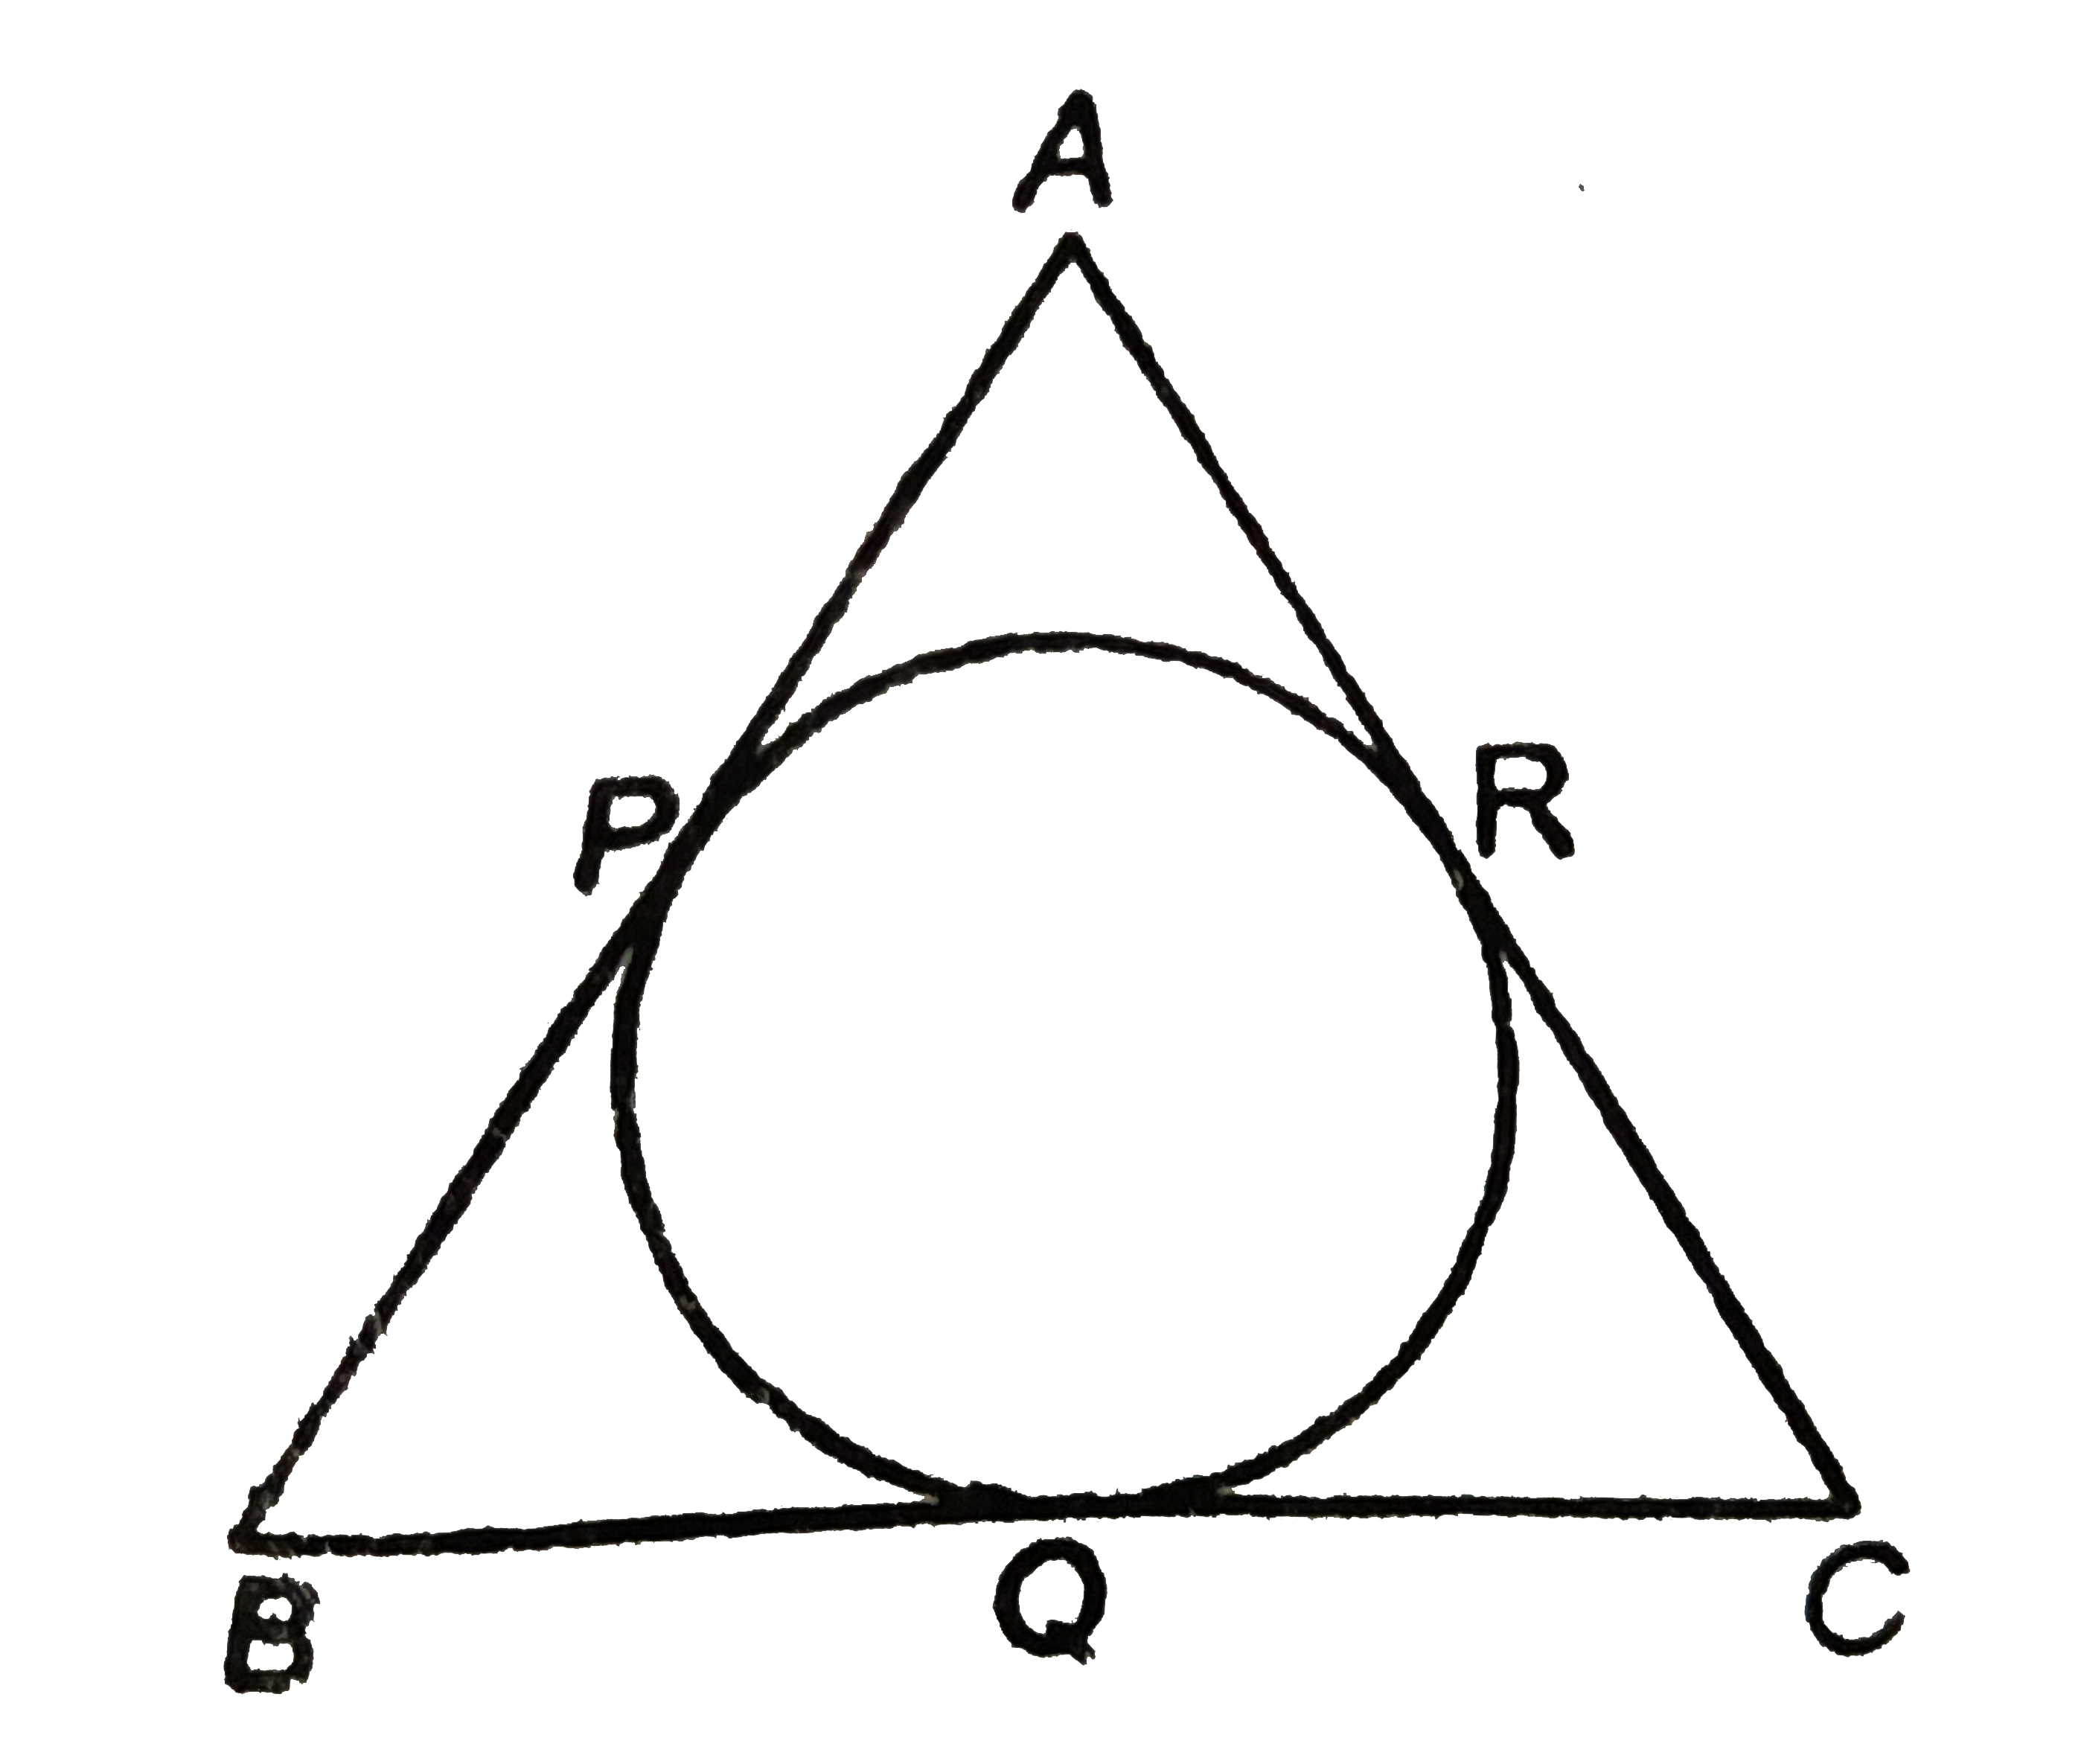 दिए गए चित्र में triangleABC की त्रिज्याएँ अन्तः वृत्त को P,Q,R पर स्पर्श करती हैं| यदि AP = 4 cm, BP = 6cm, AC =12 cm और BC= x cm, तो x=